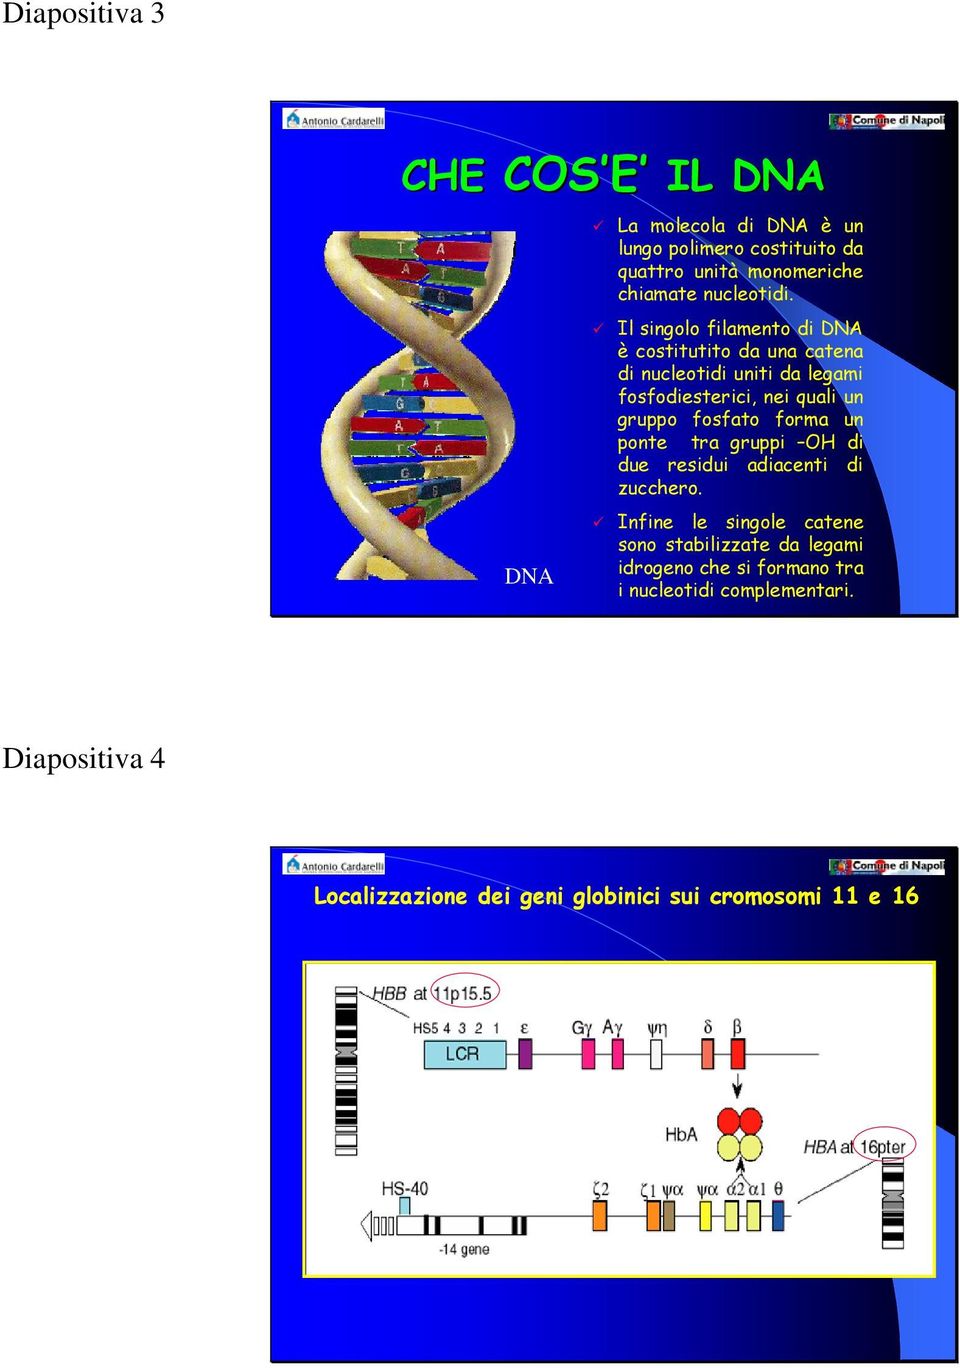 Il singolo filamento di DNA è costitutito da una catena di nucleotidi uniti da legami fosfodiesterici, nei quali un gruppo